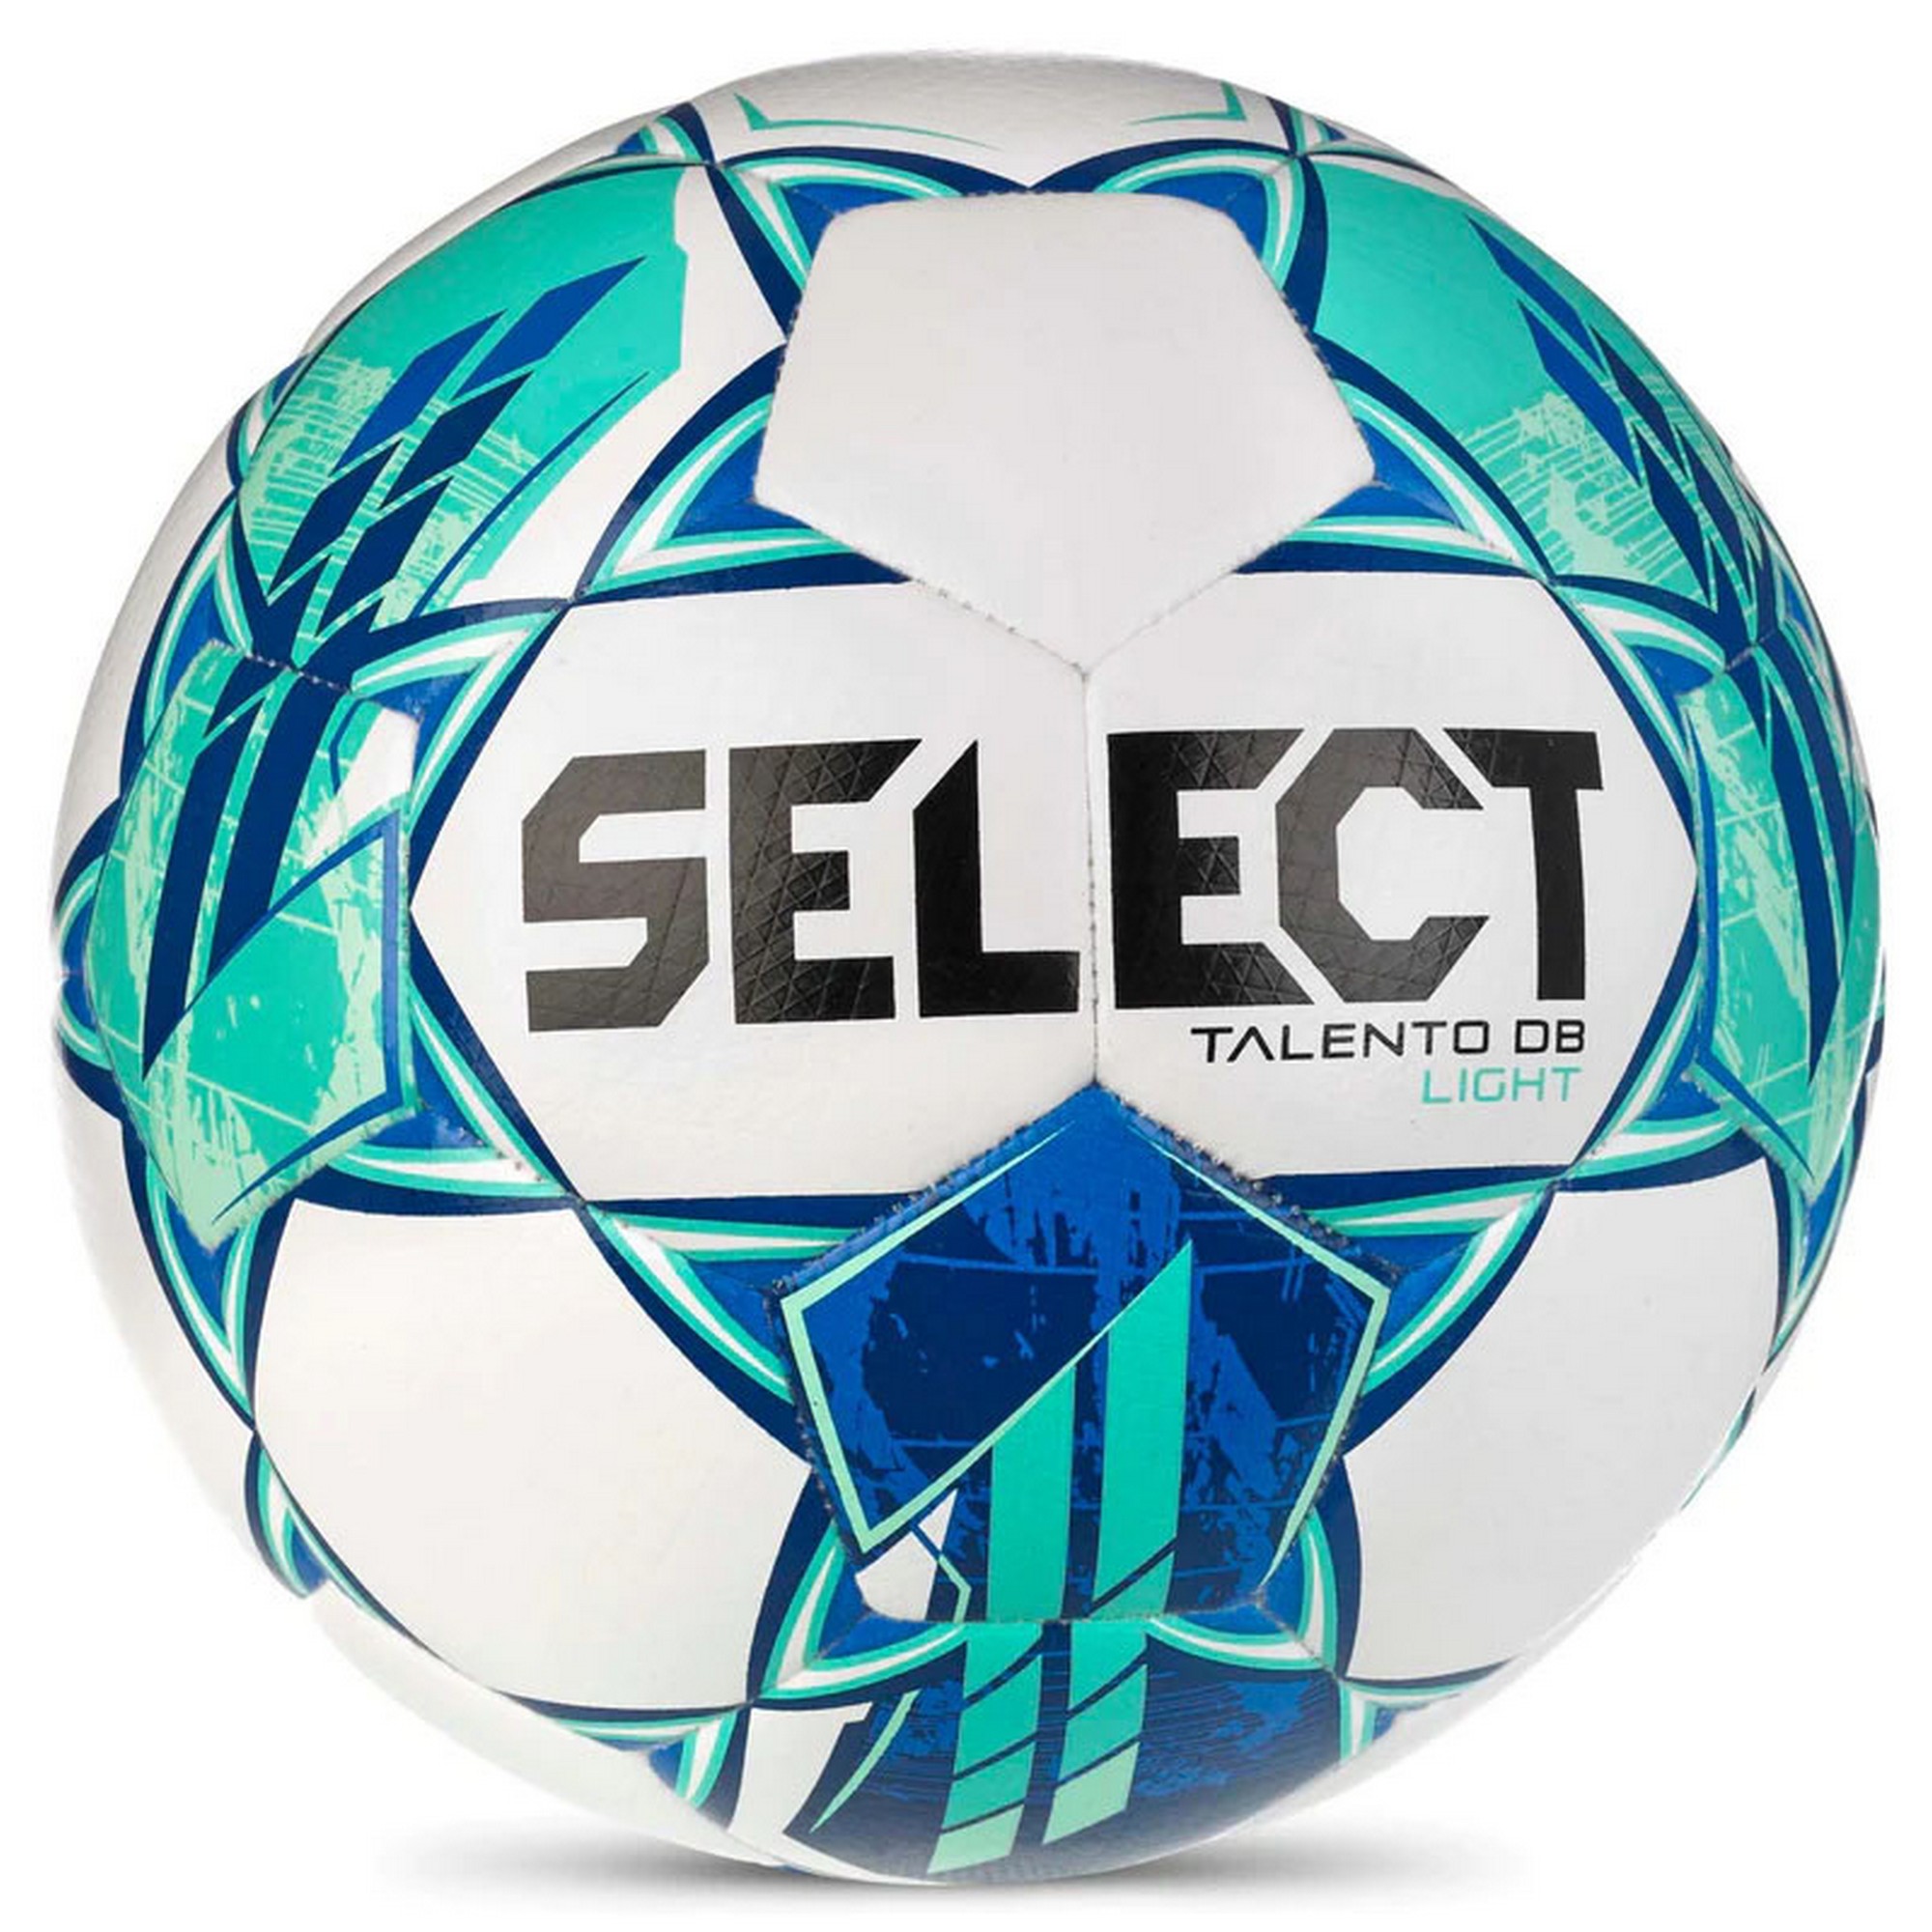 Мяч футбольный Select Talento DB Light V23 0775860004 р.5 2000_2000